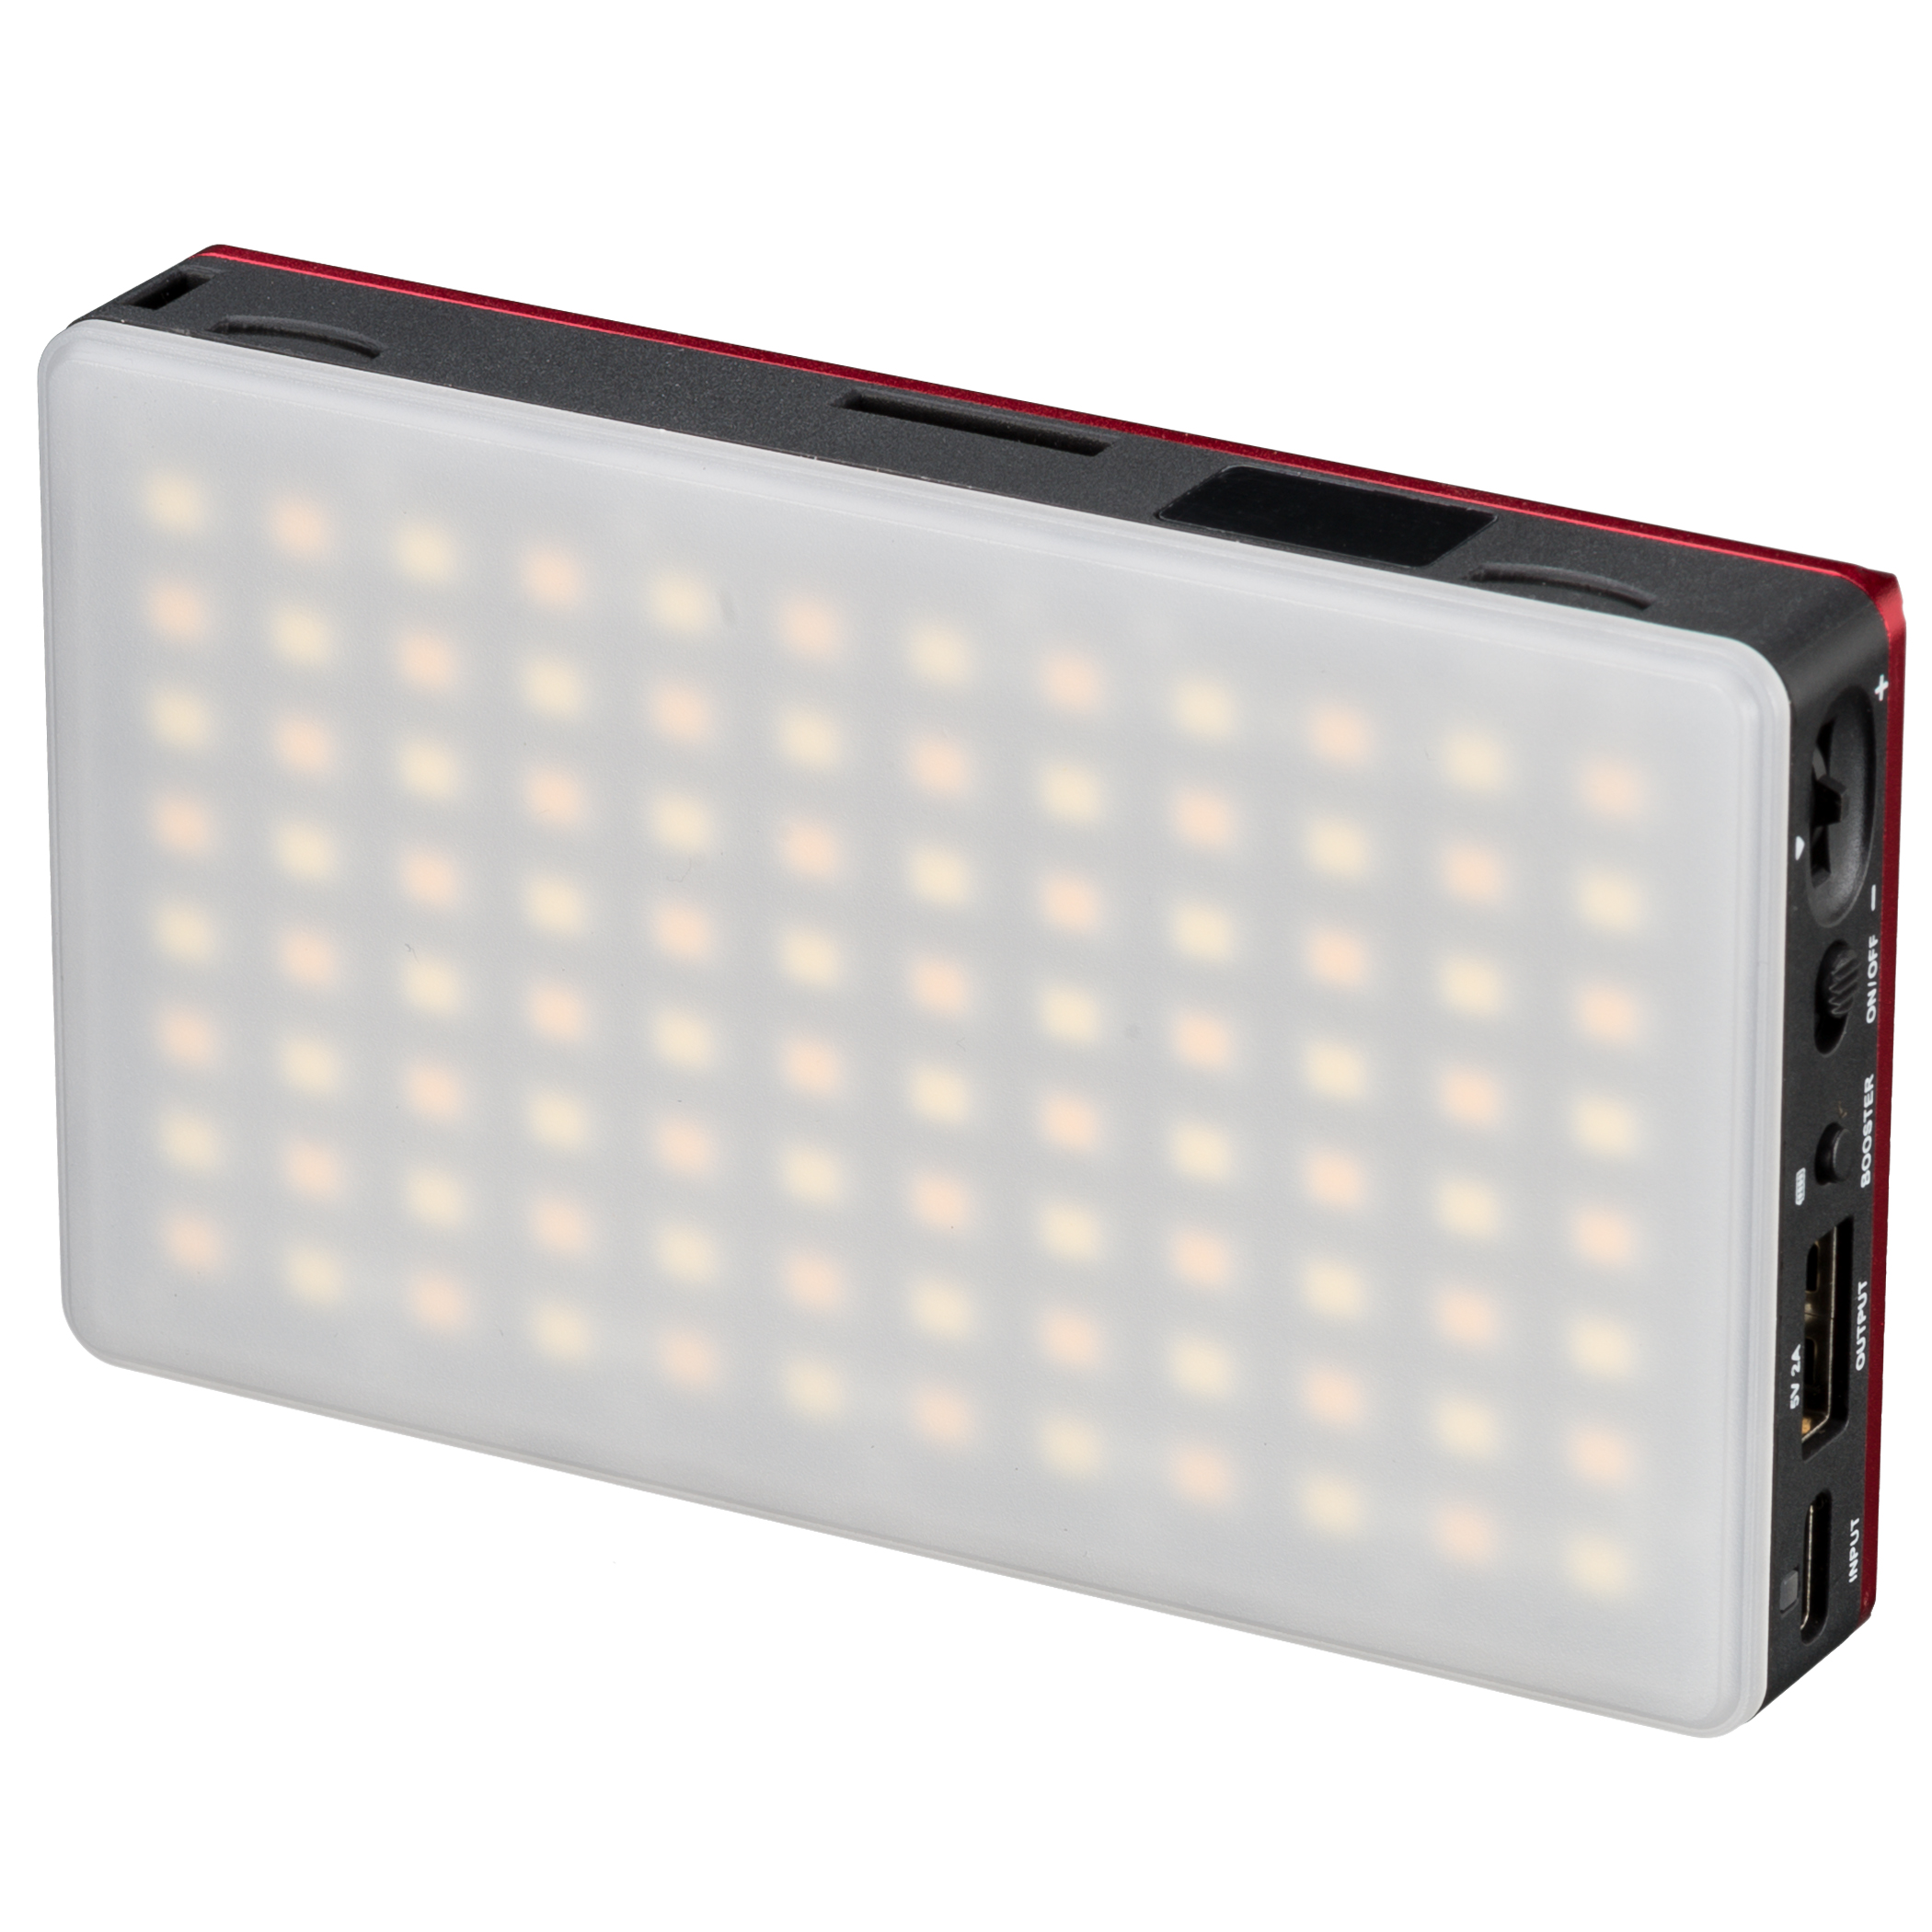 Pannello bicolore LED 9W BRESSER Pocket per l’Uso mobile e per Foto con lo Smartphone